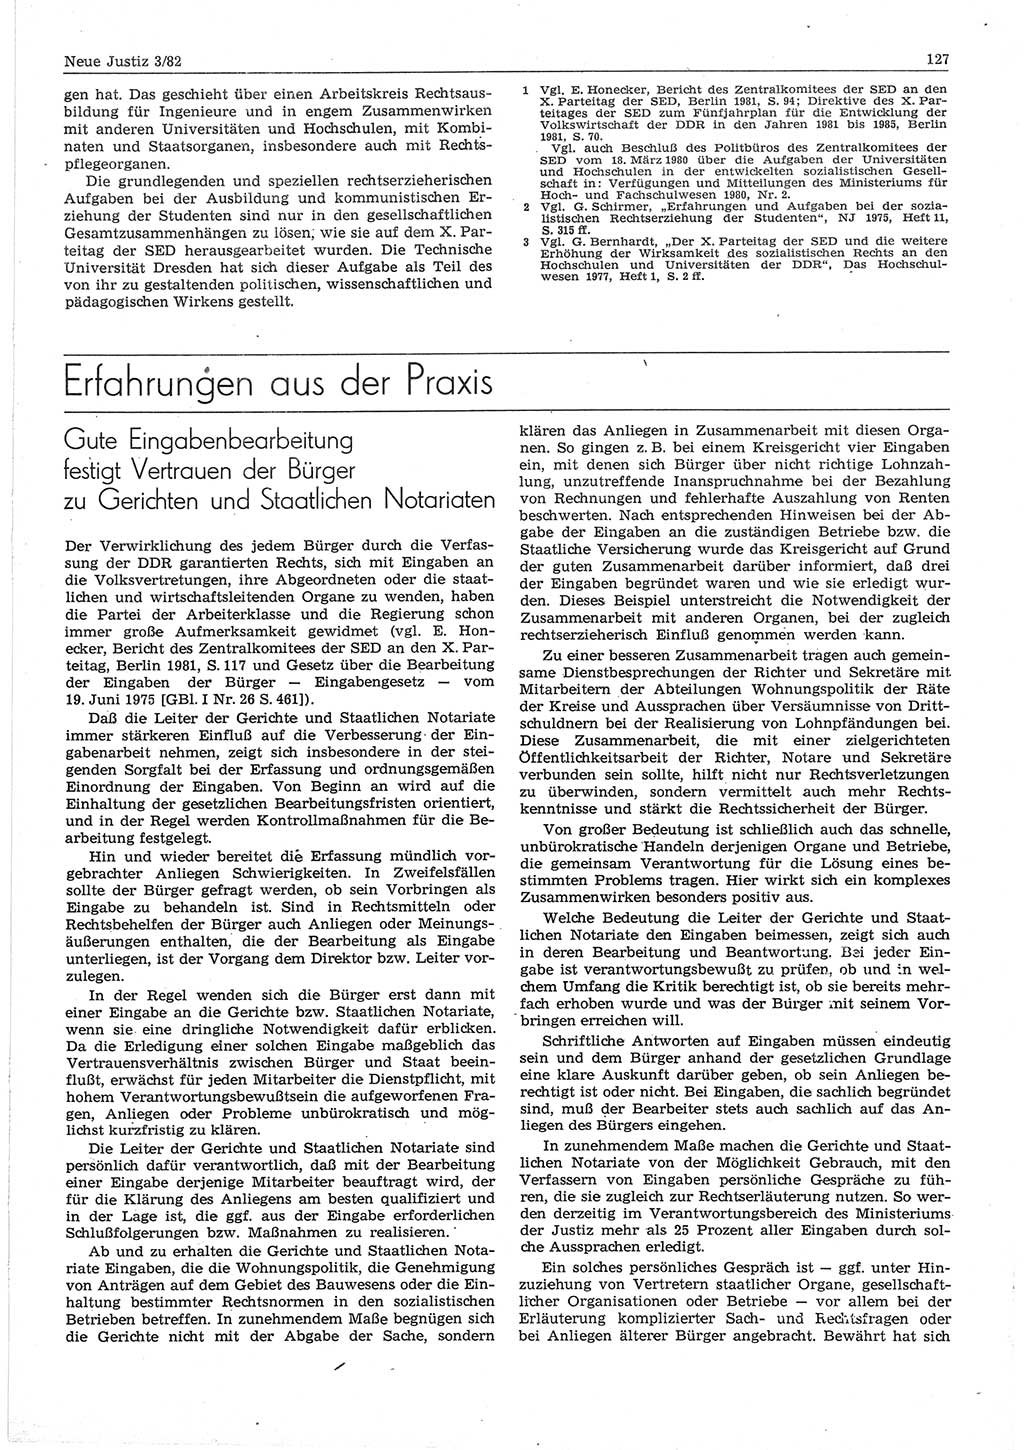 Neue Justiz (NJ), Zeitschrift für sozialistisches Recht und Gesetzlichkeit [Deutsche Demokratische Republik (DDR)], 36. Jahrgang 1982, Seite 127 (NJ DDR 1982, S. 127)